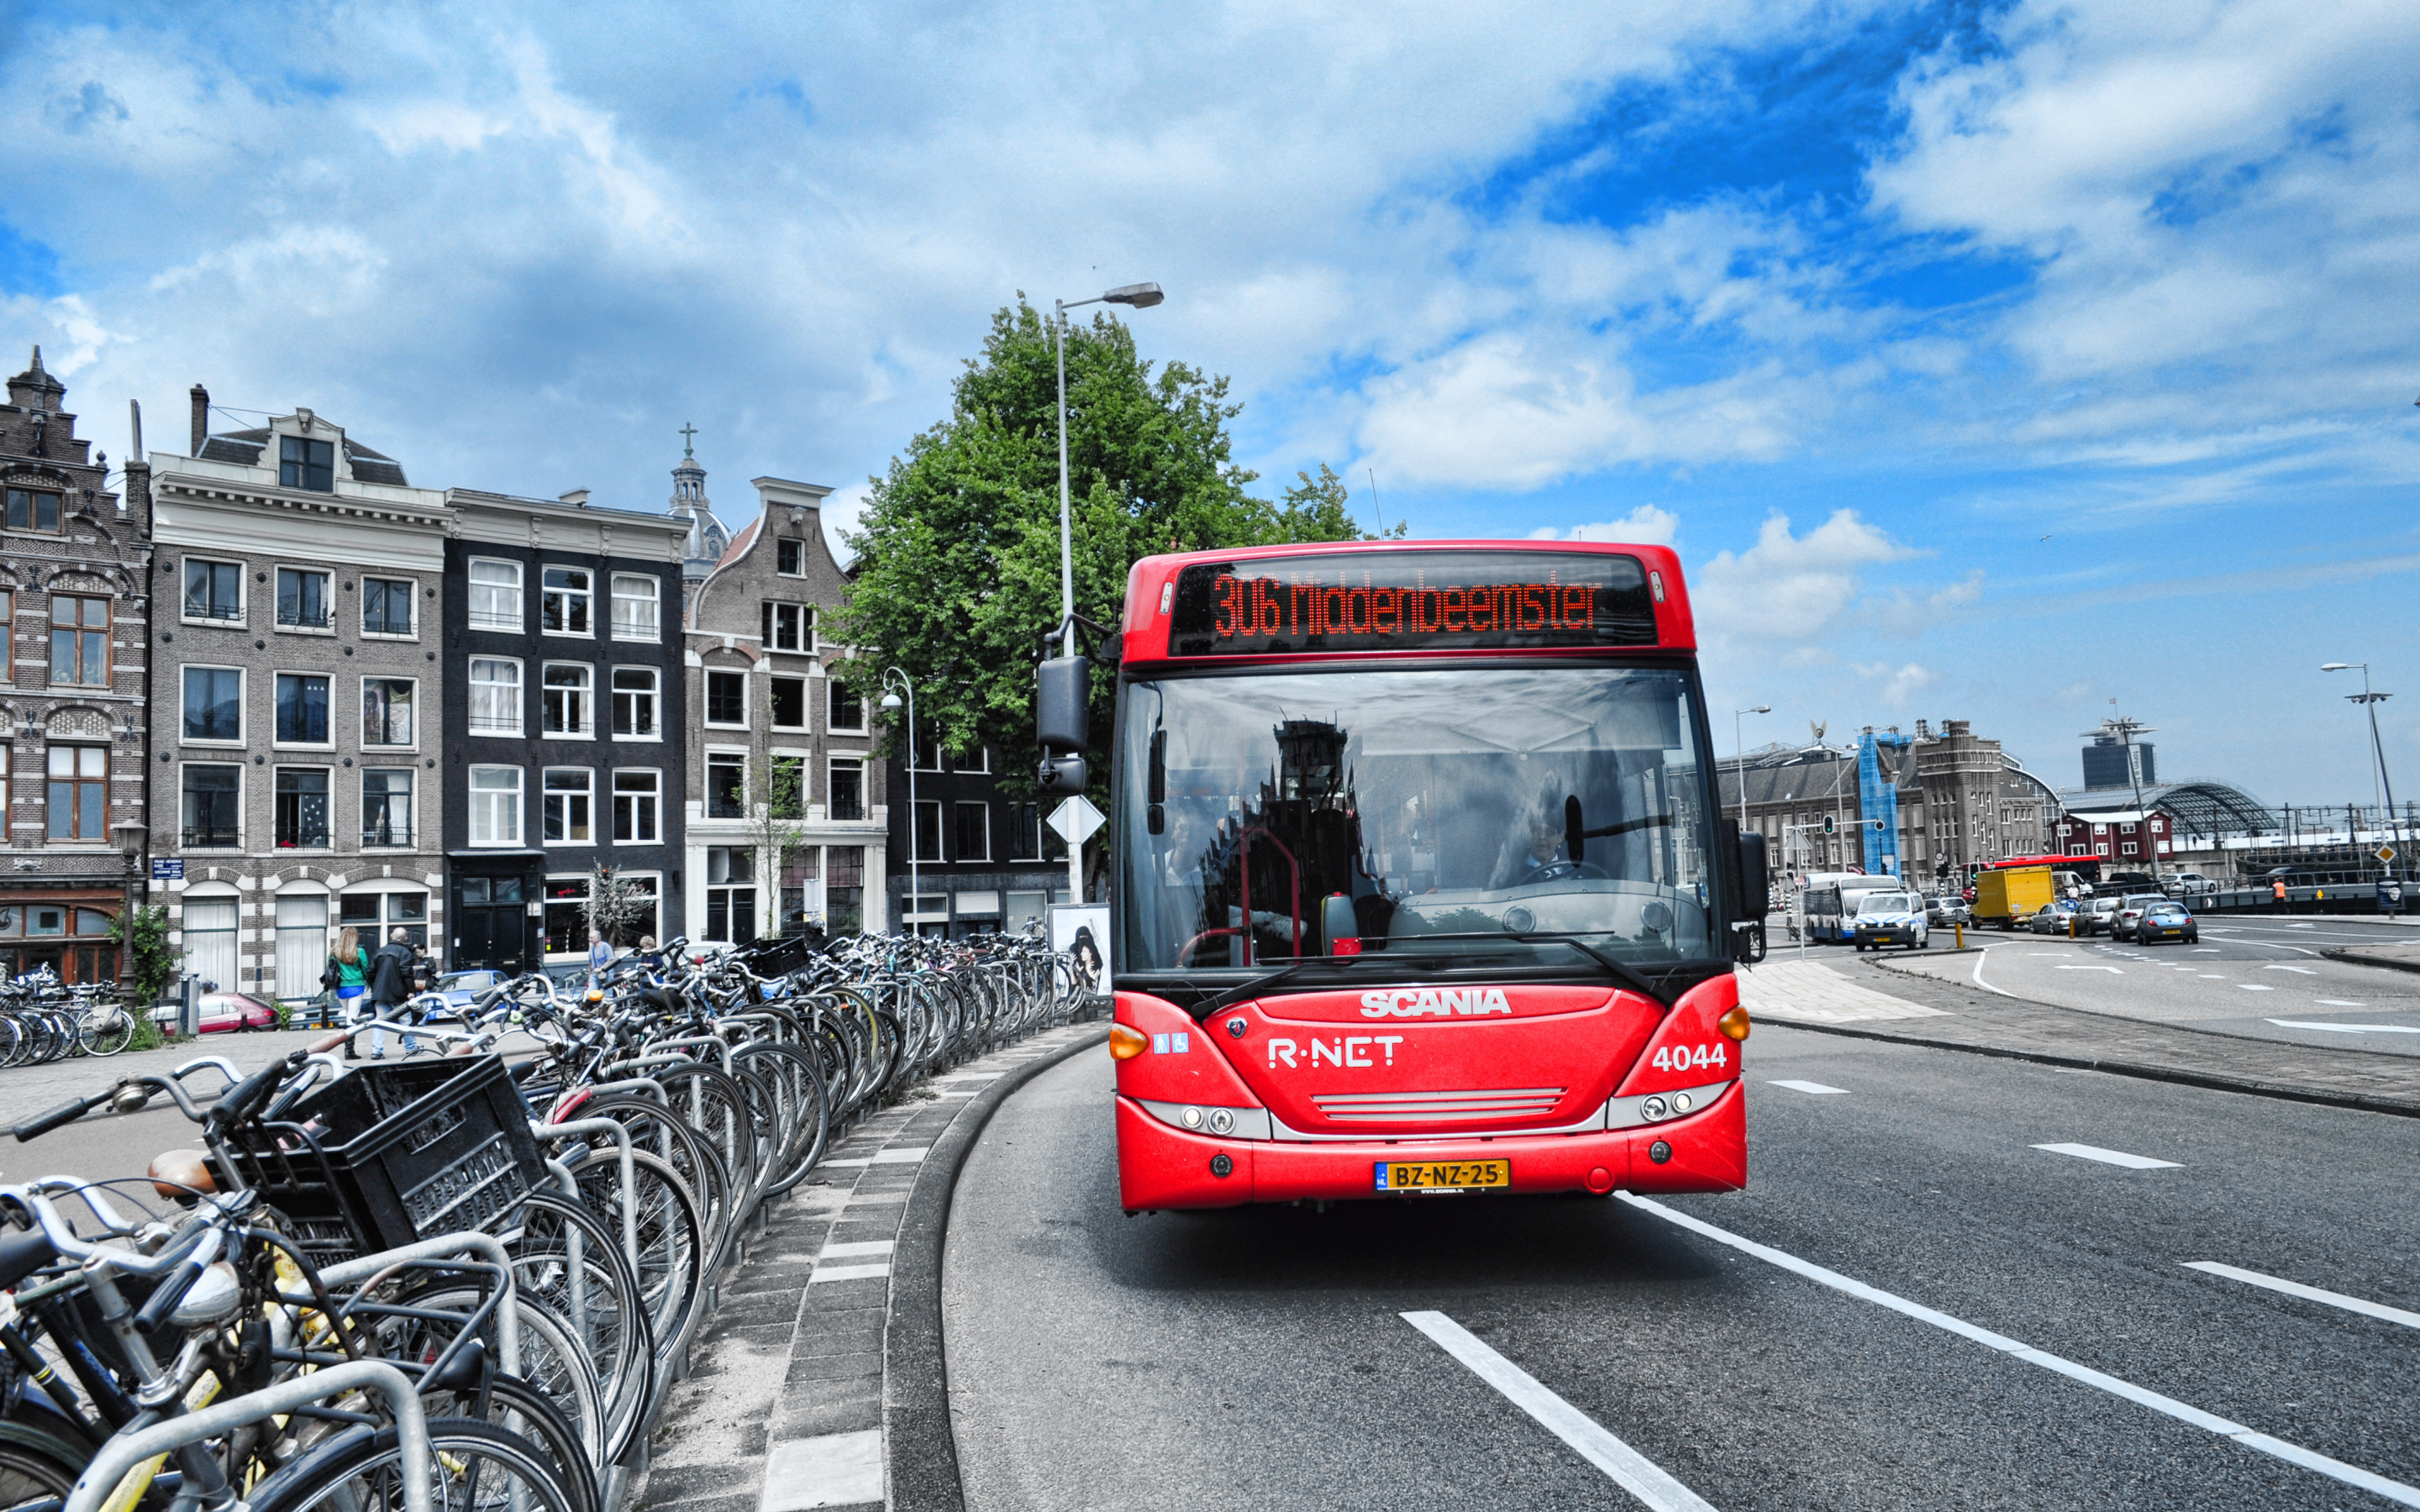 Town transport. Амстердам транспорт. Городской транспорт. Красивый автобус. Автобус в городе.